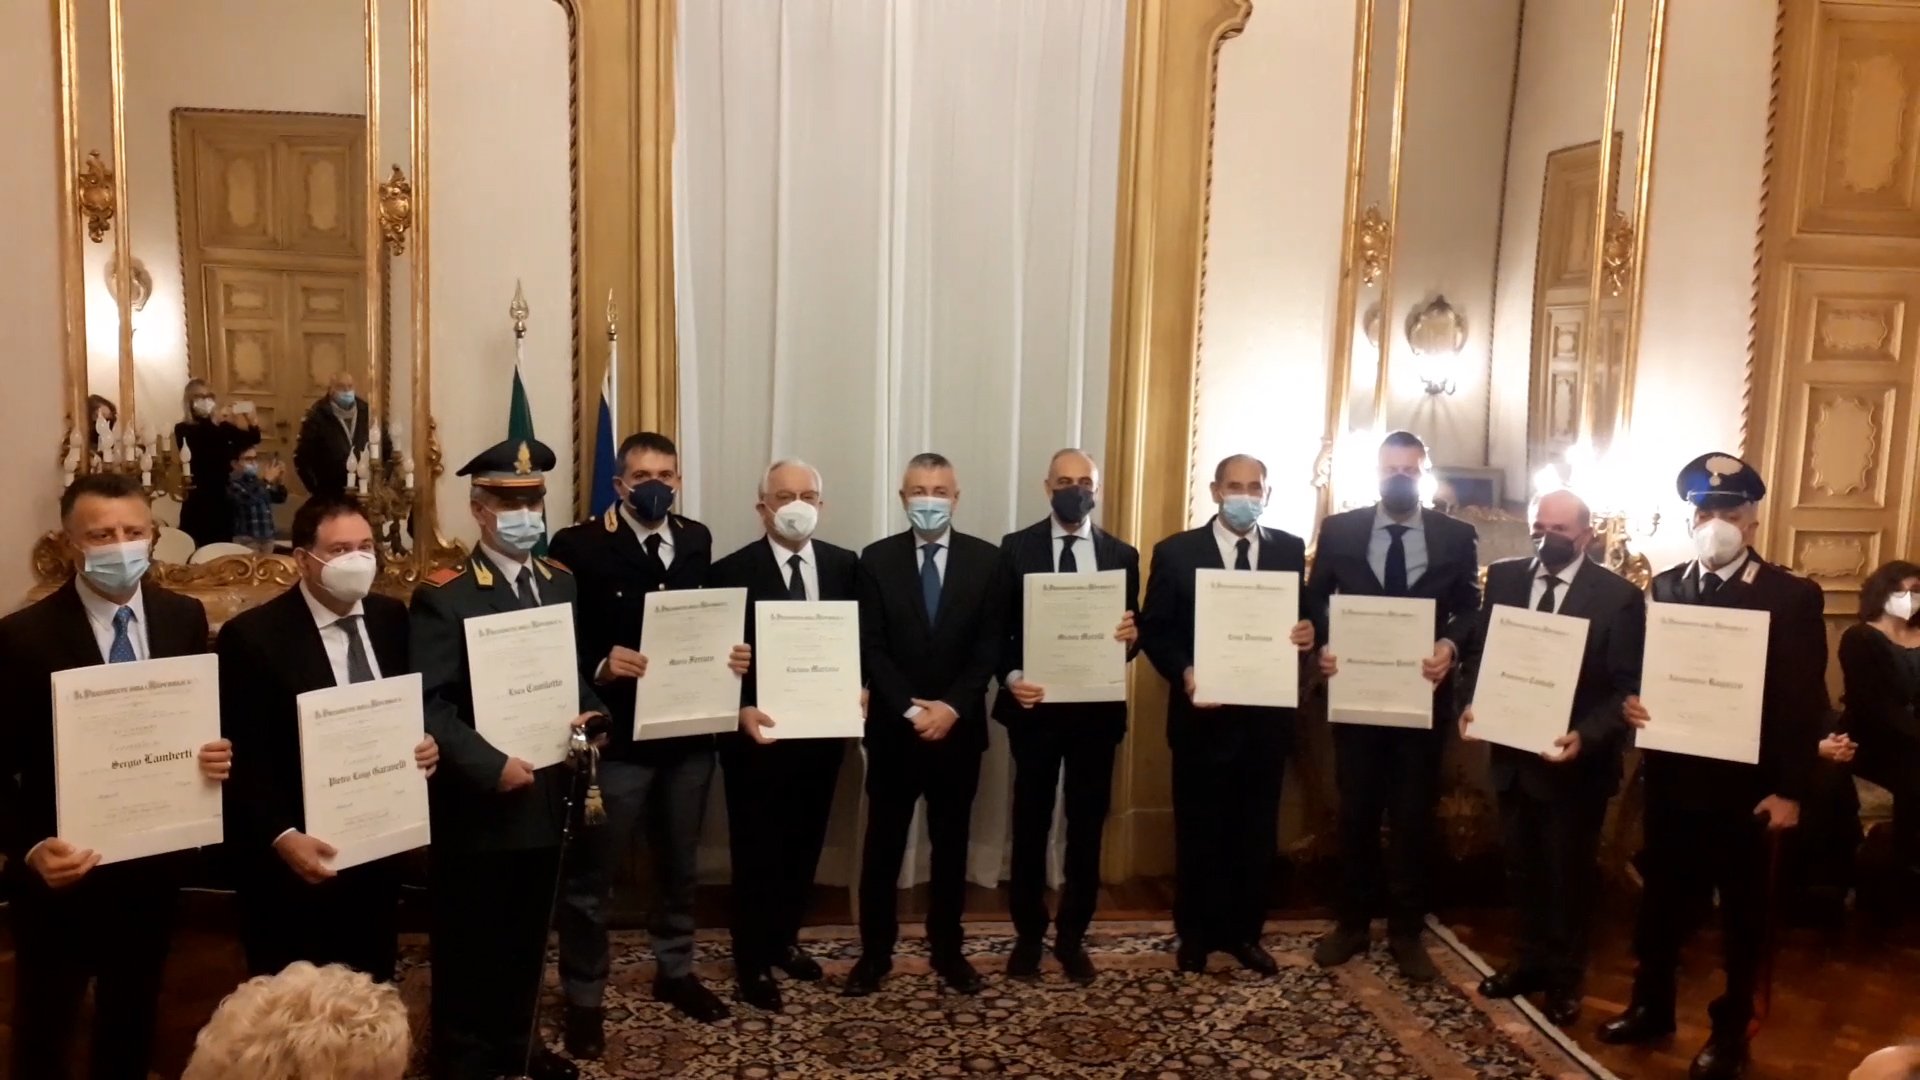 Dal Presidente Mattarella onorificenze a dieci cittadini benemeriti della provincia: i premiati